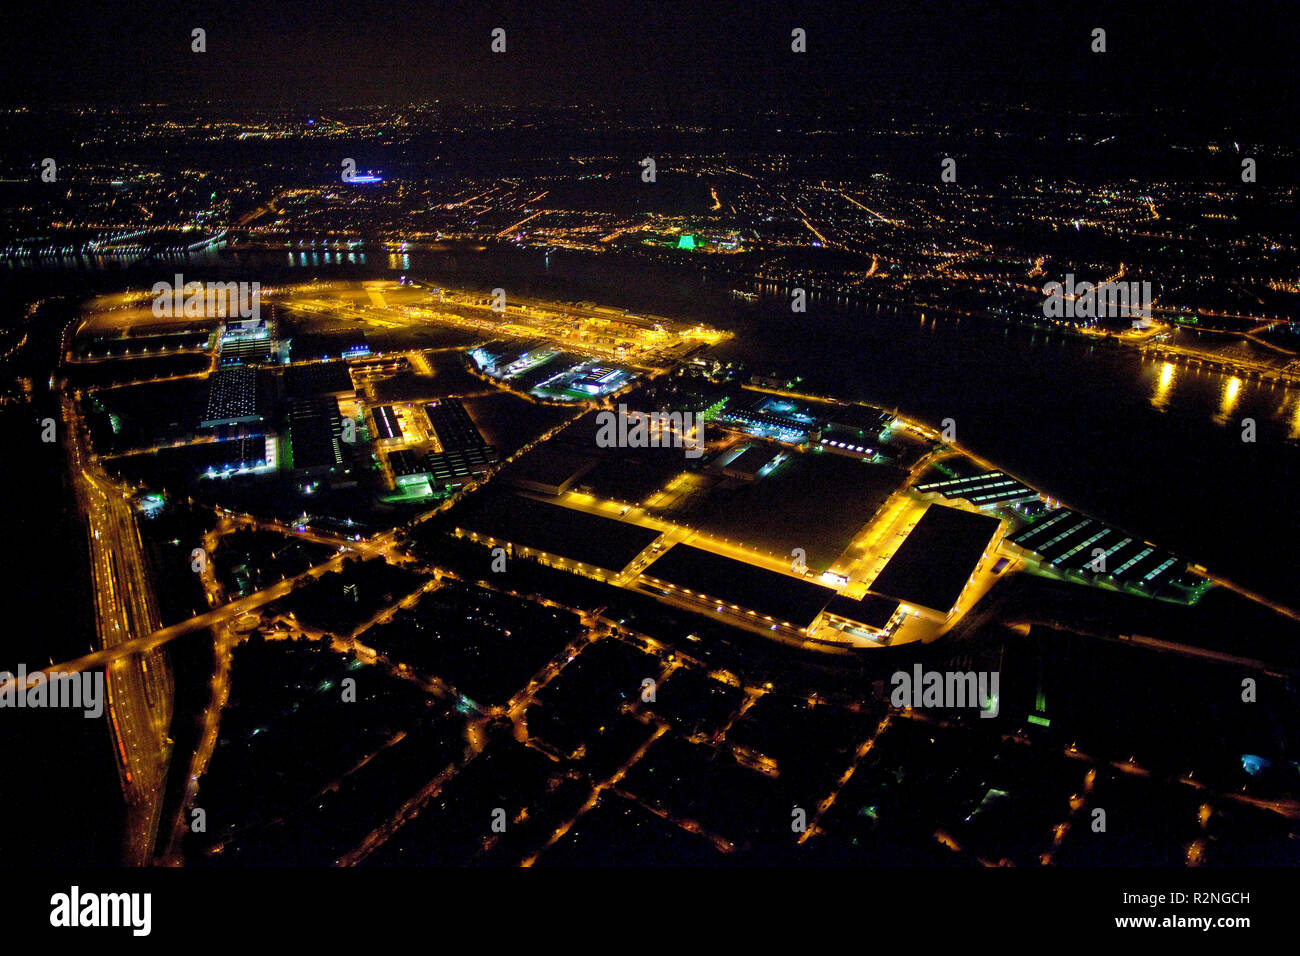 Vista aerea, night shot, Logport, Duisport, Duisburg porto di Duisburg, zona della Ruhr, Renania settentrionale-Vestfalia, Germania, Europa Foto Stock